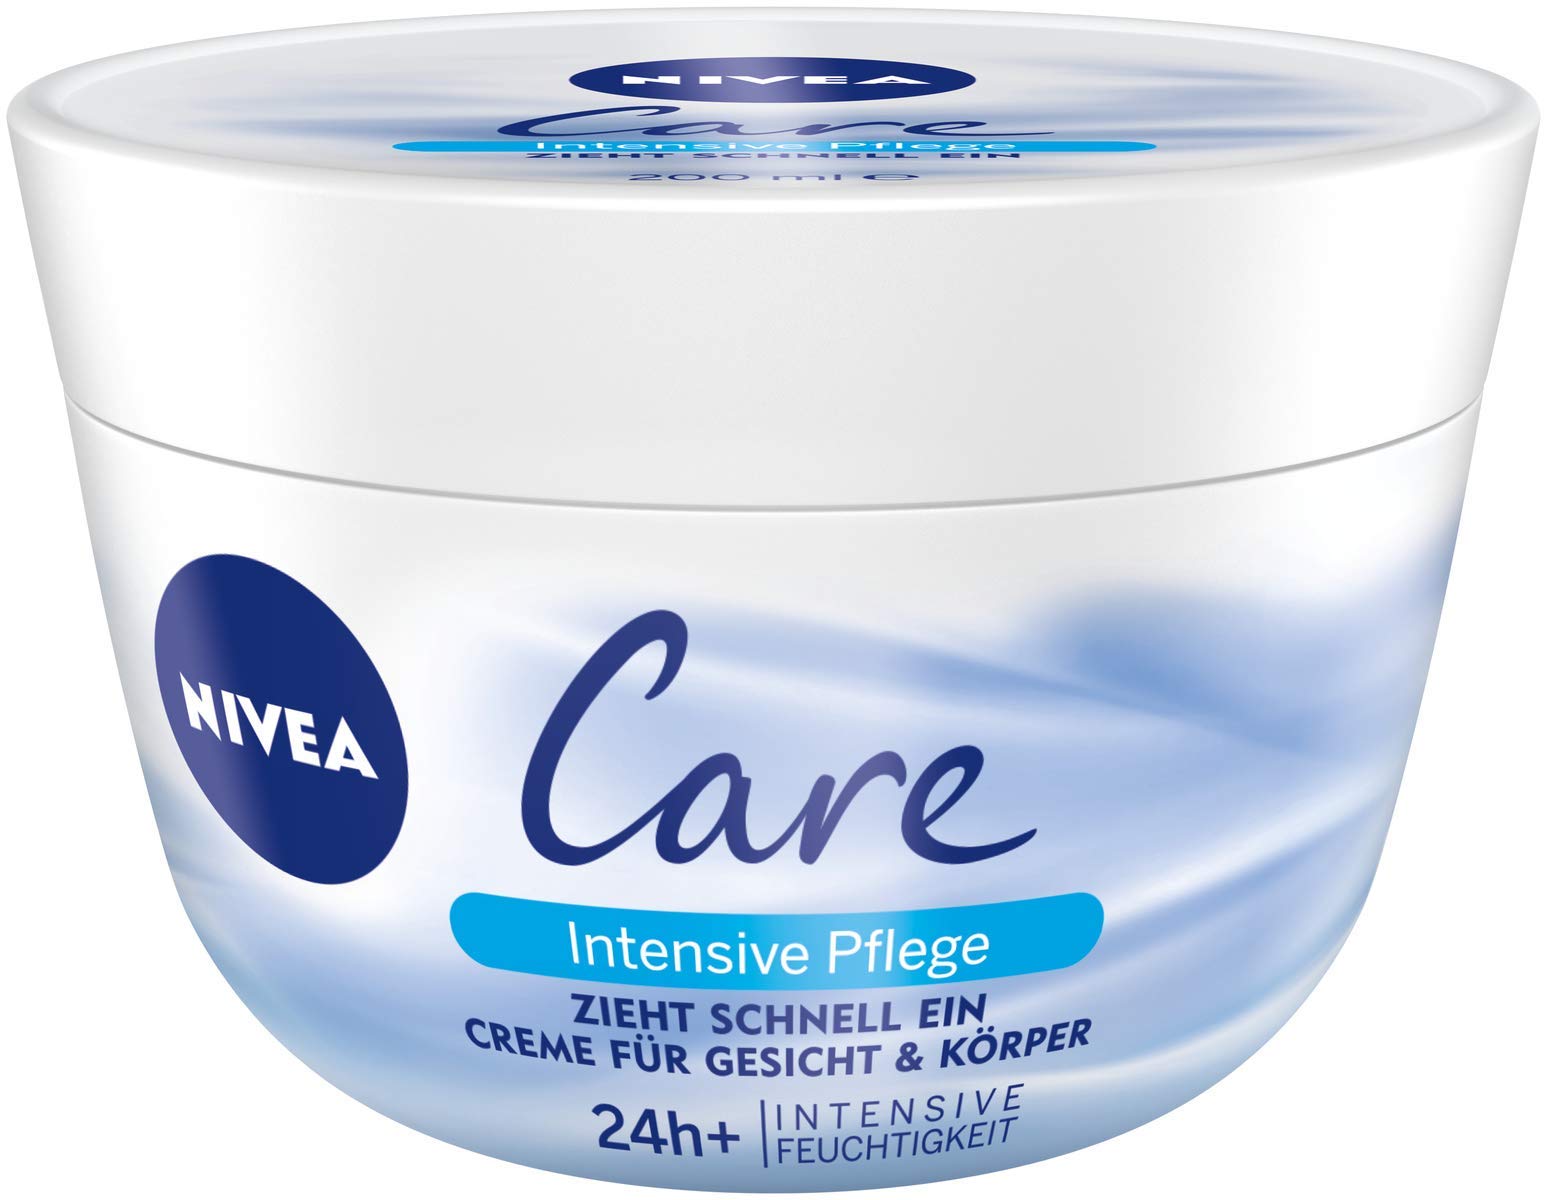 NIVEA 4er Pack Creme für Körper & Gesicht, 4 x 200 ml Tiegel, Care Intensive Pflege, zieht schnell ein, feuchtigkeitsspendend